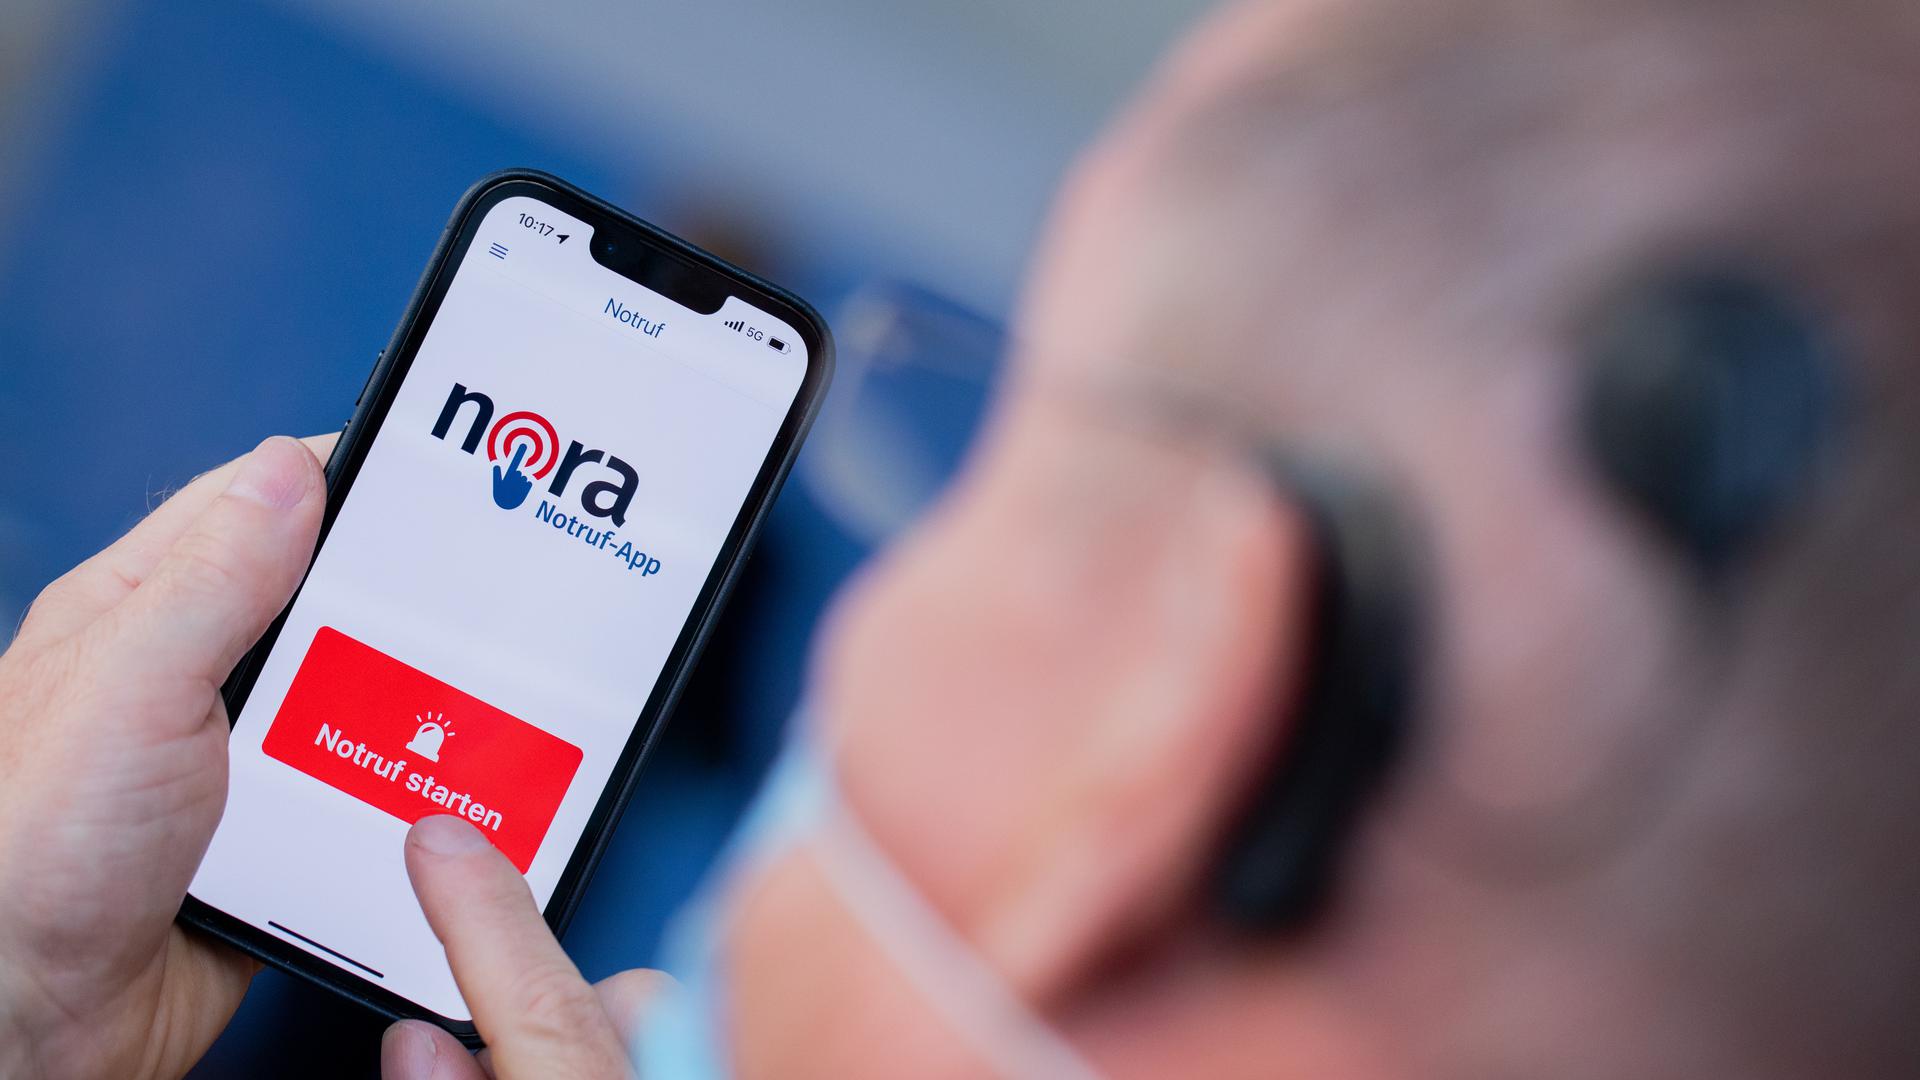 Lautlose Kommunikation in Notfällen: Die neue App Nora ist eine Ergänzung zu den Notrufnummern 110 und 112 von Polizei, Feuerwehr und Rettungsdiensten und richtet sich vor allem an Menschen mit einer Hör- und Sprachbehinderung. 